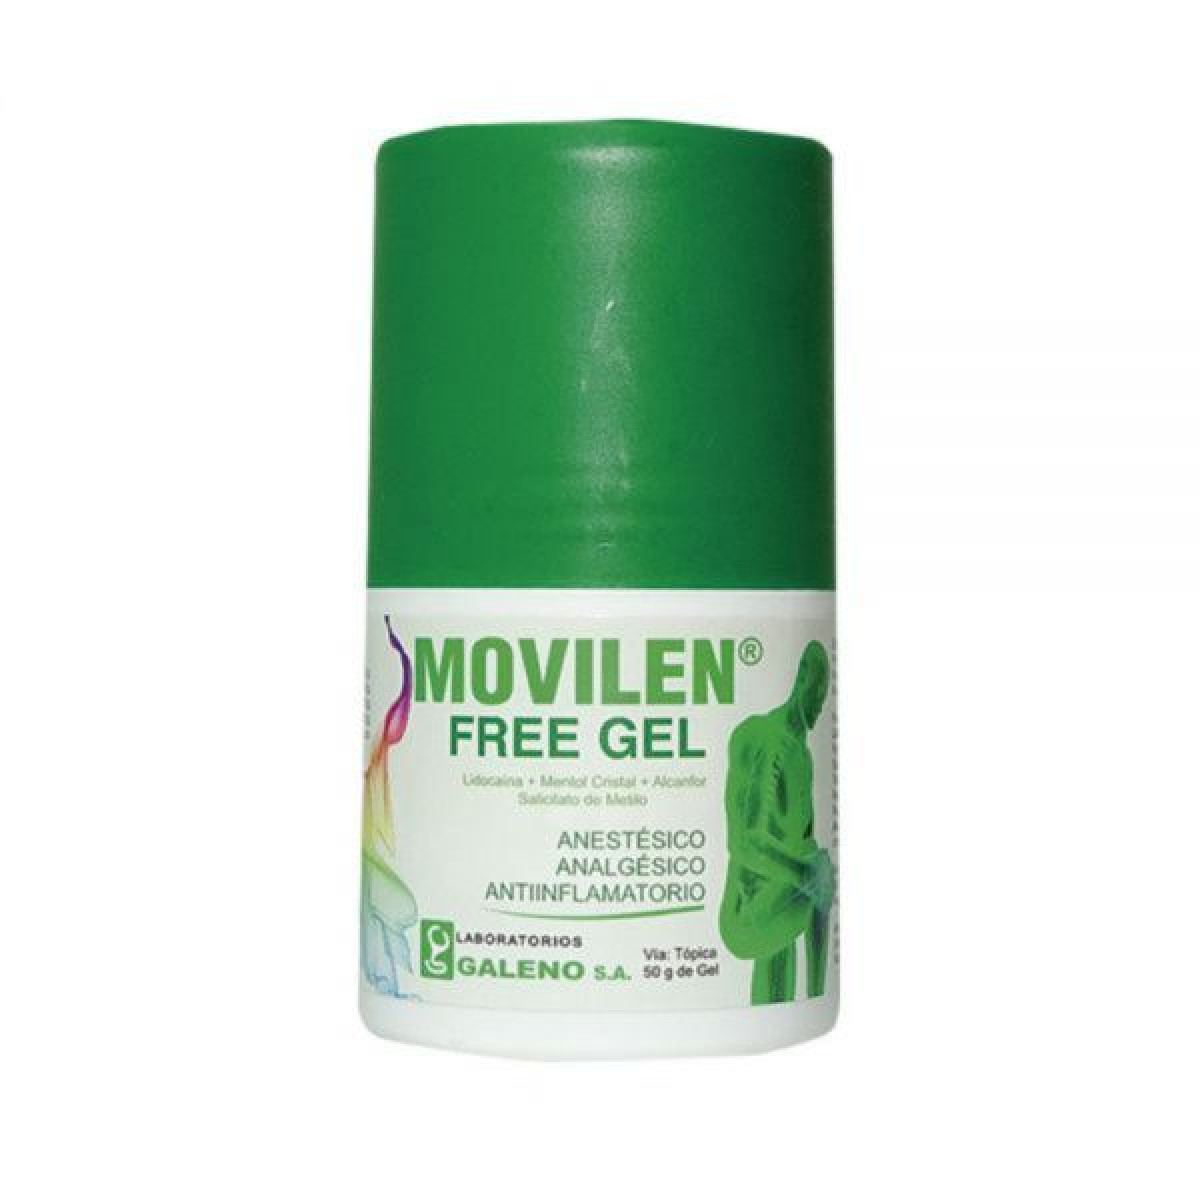 MOVILEN FREE GEL X 50 GR